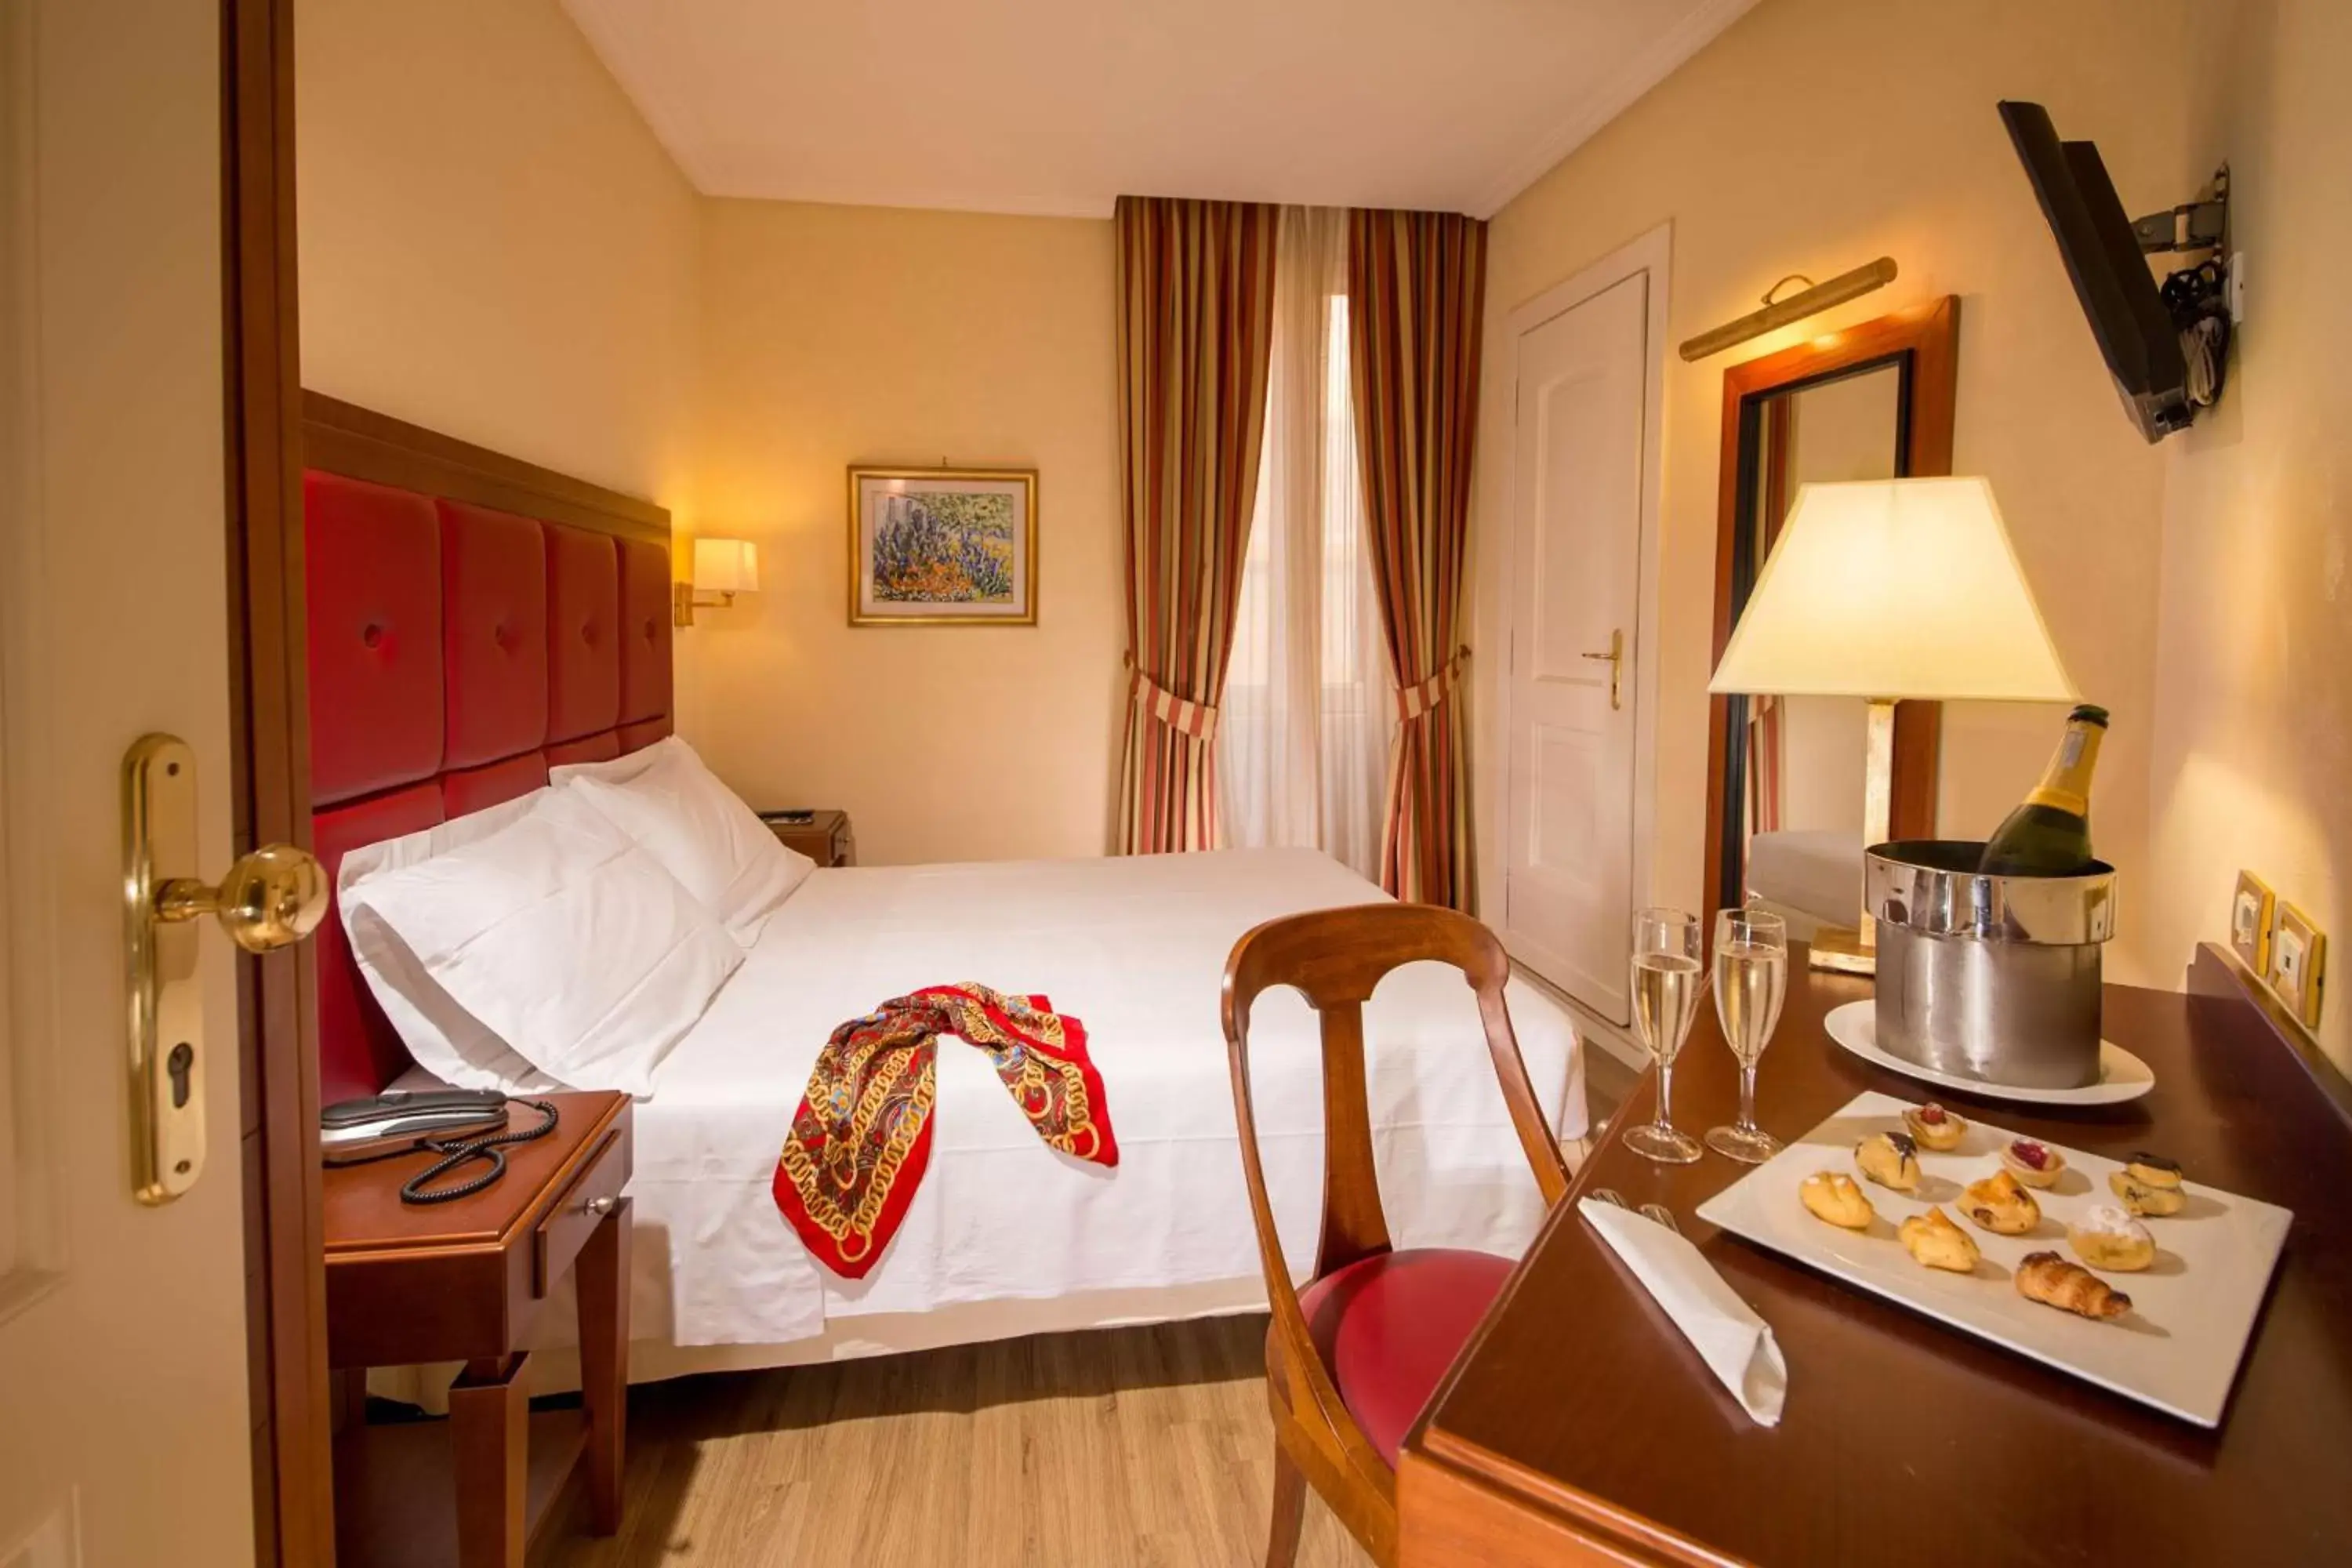 Bedroom, Bed in Best Western Hotel Astrid